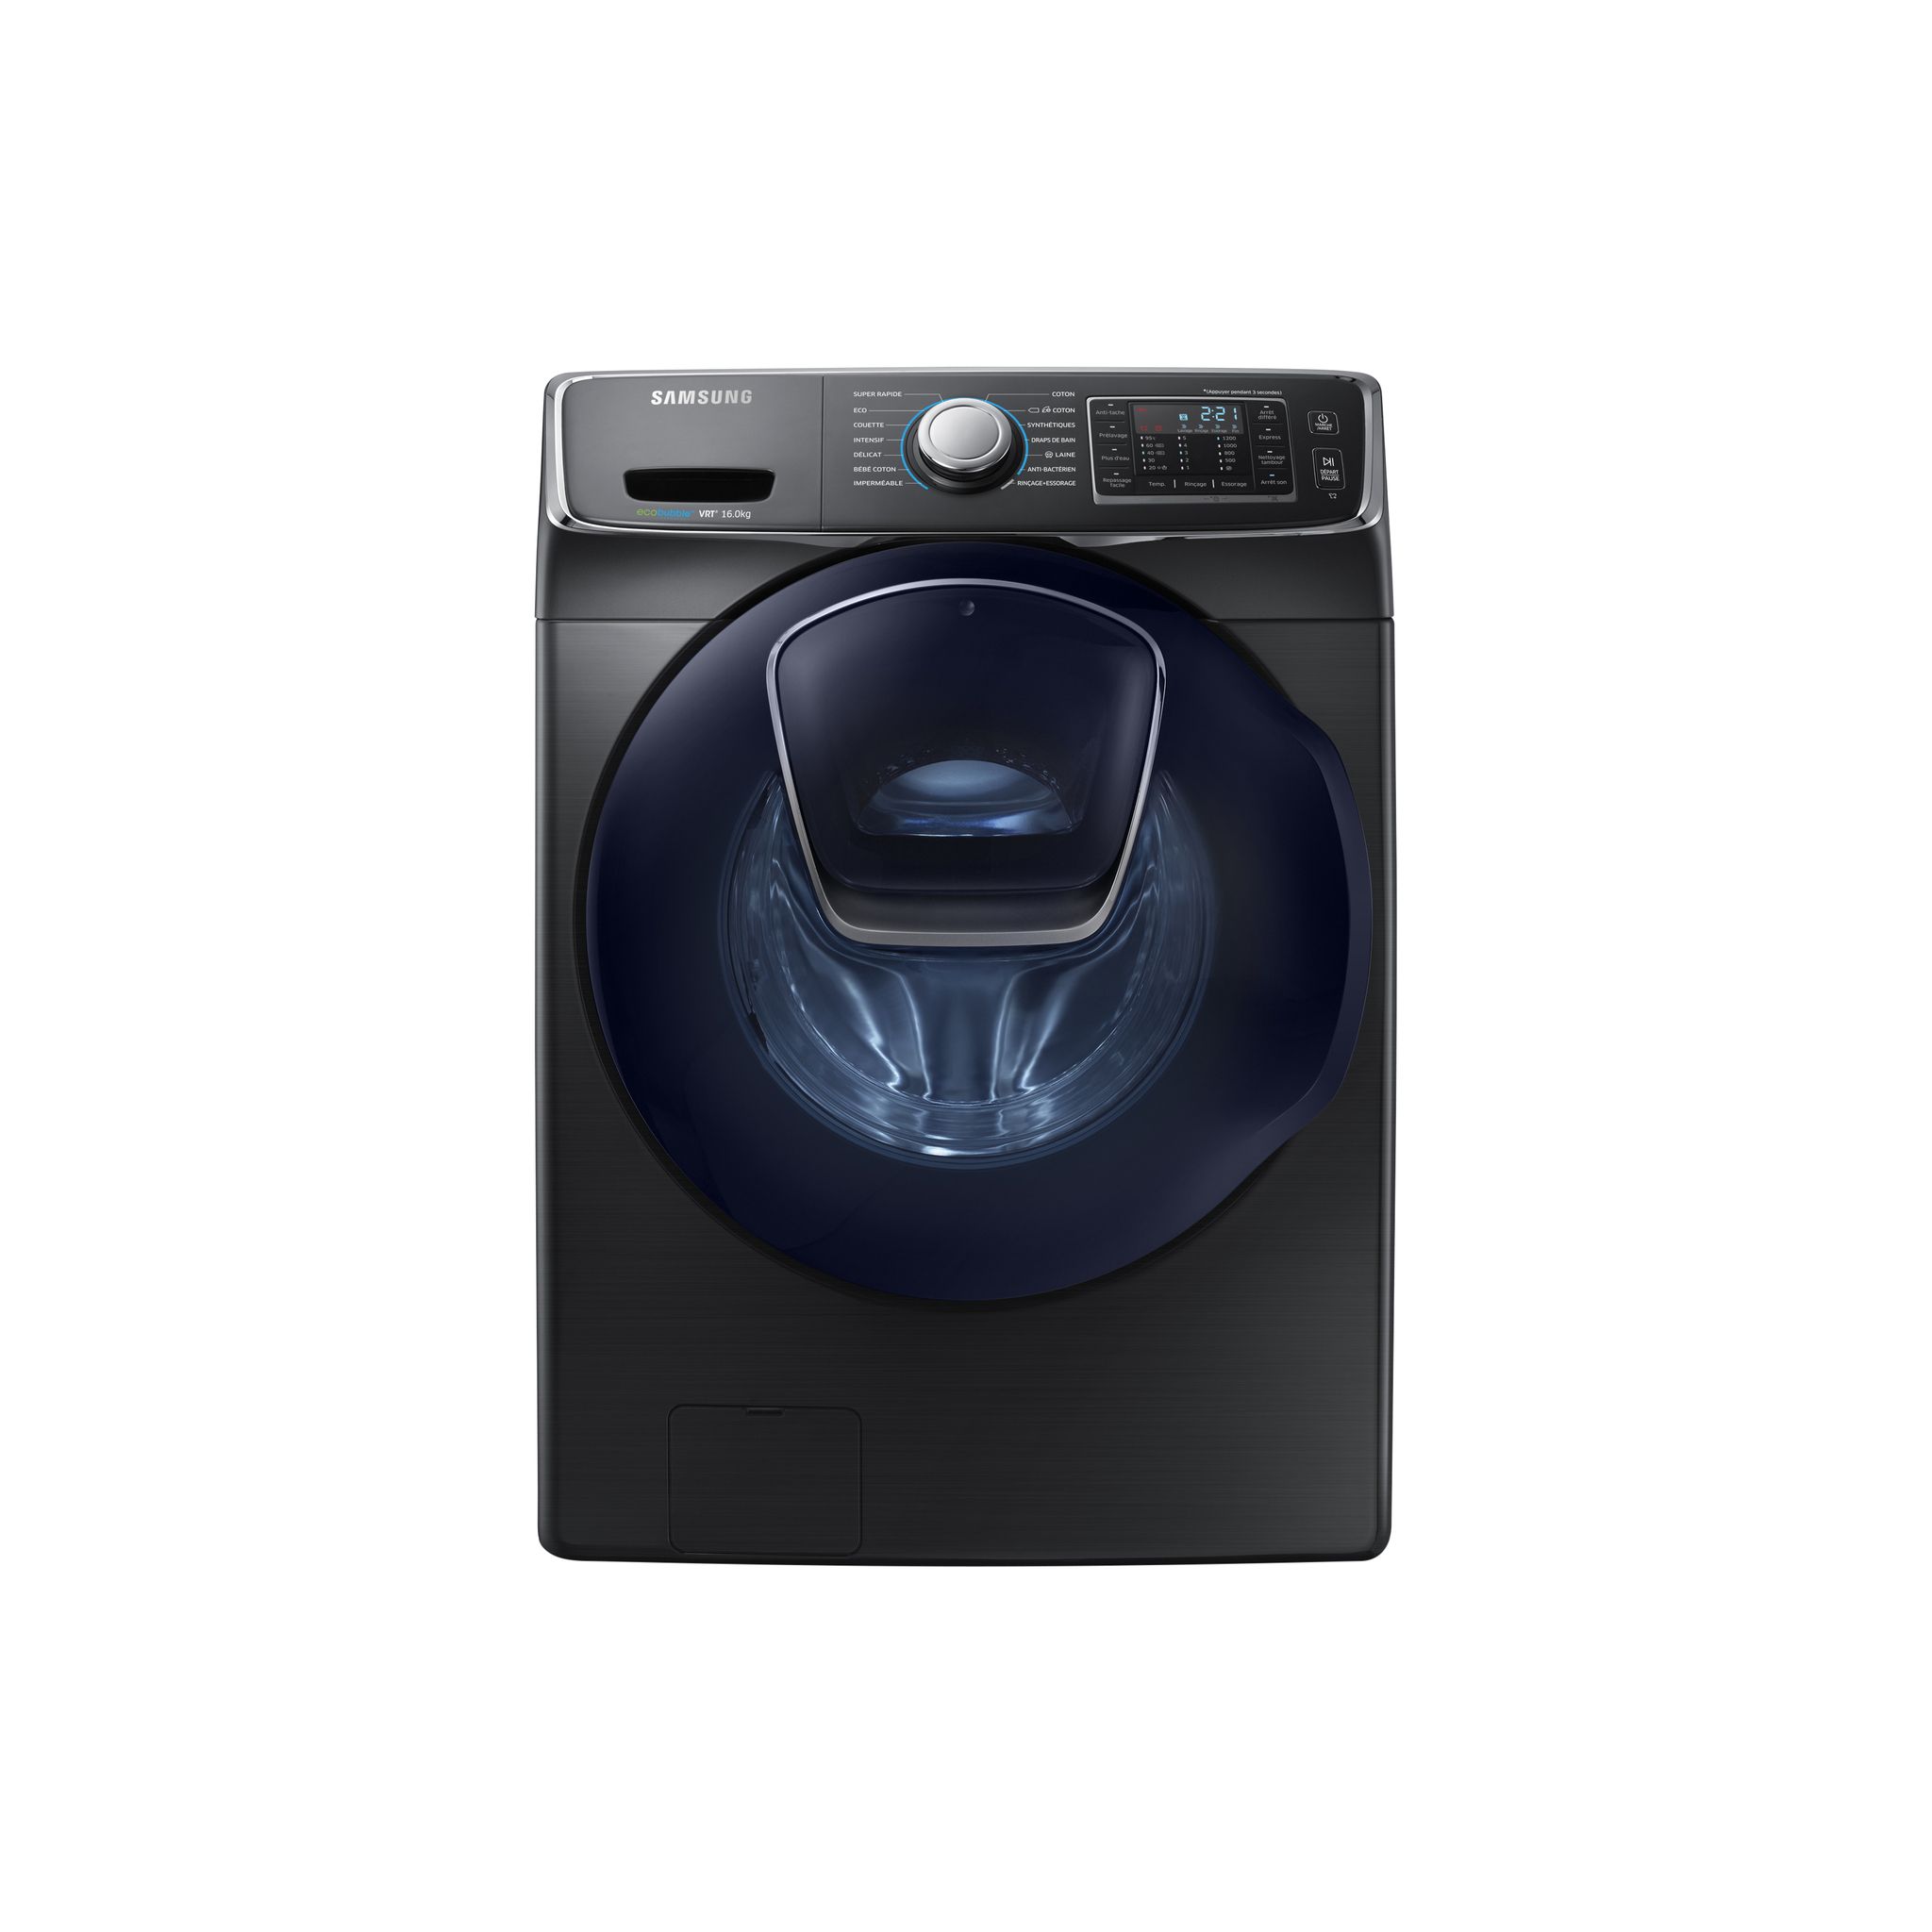 Machine à laver professionnelle - 16kg - Les prix les moins cher